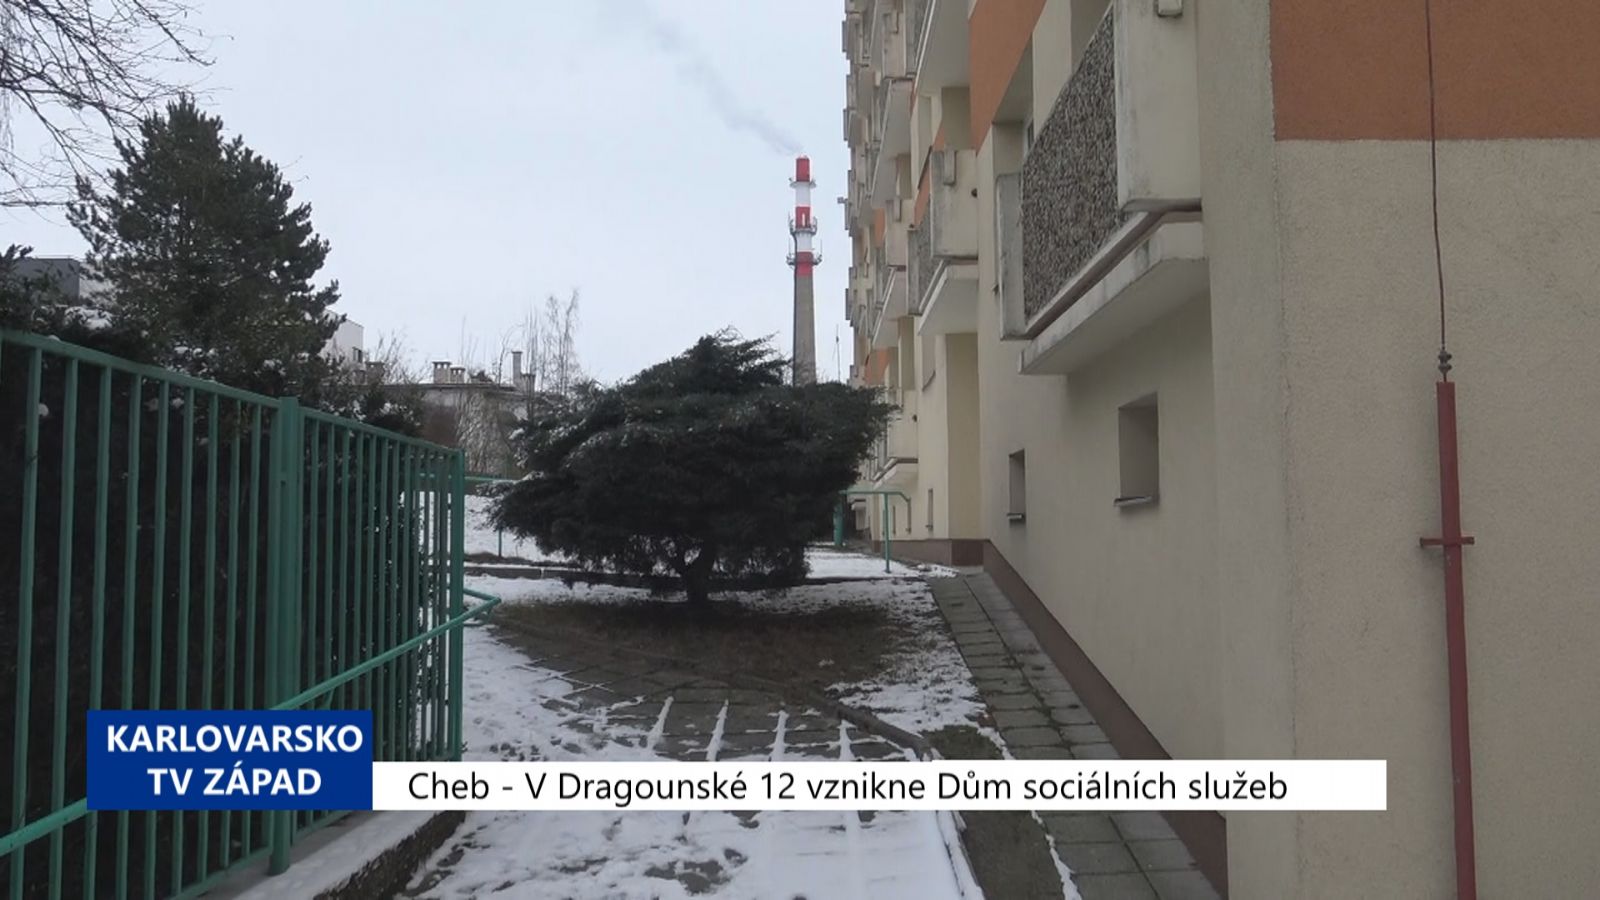 Cheb: V Dragounské 12 vznikne Dům sociálních služeb (TV Západ)